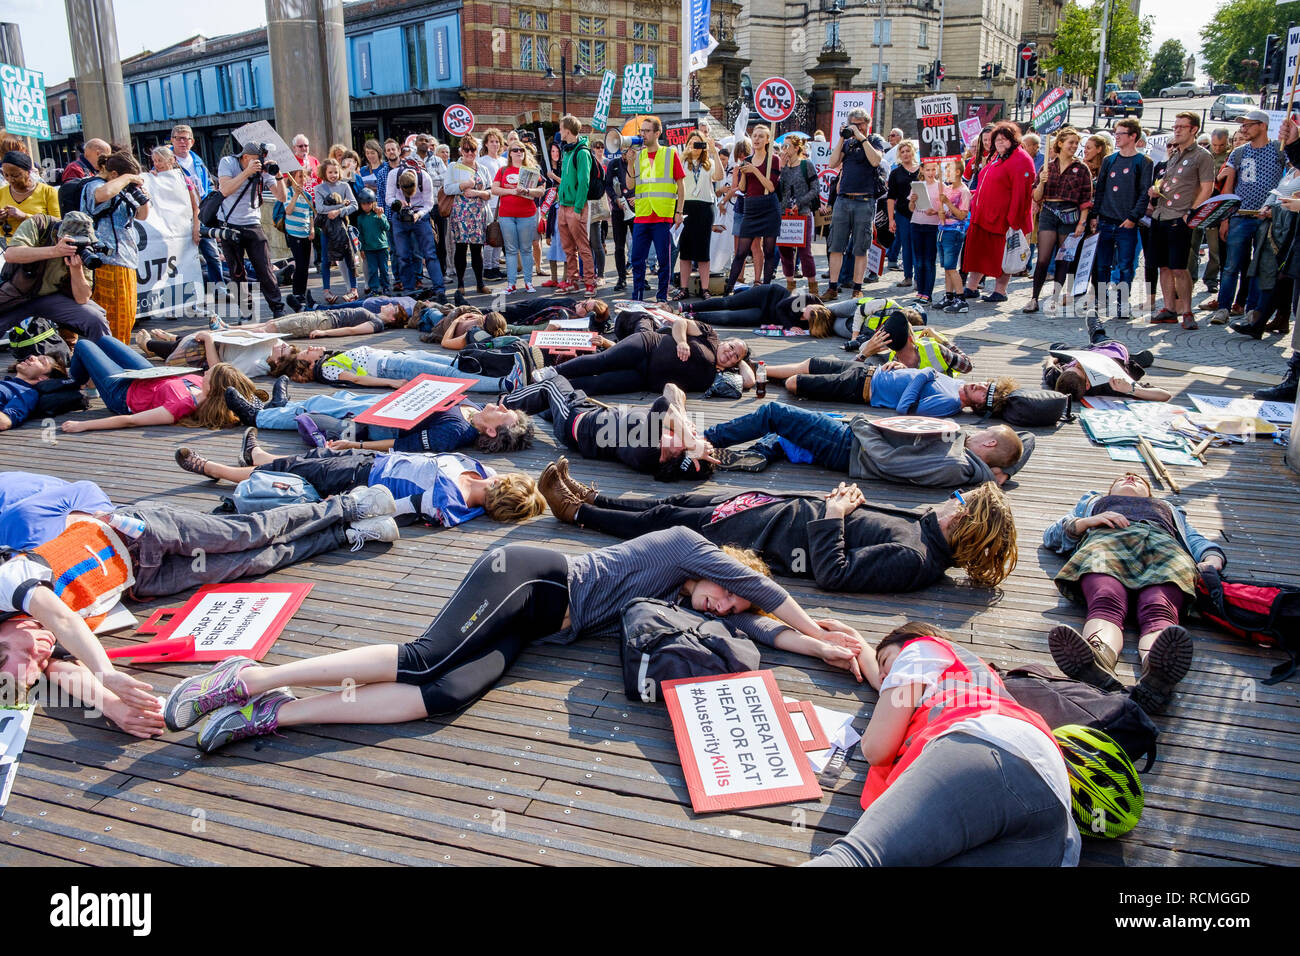 Bristol, Royaume-Uni, 08 juillet 2015.Les manifestants sont représentés comme ils prennent part à une mortalité massive dans le cadre d'une protestation contre l'austérité à Bristol Banque D'Images